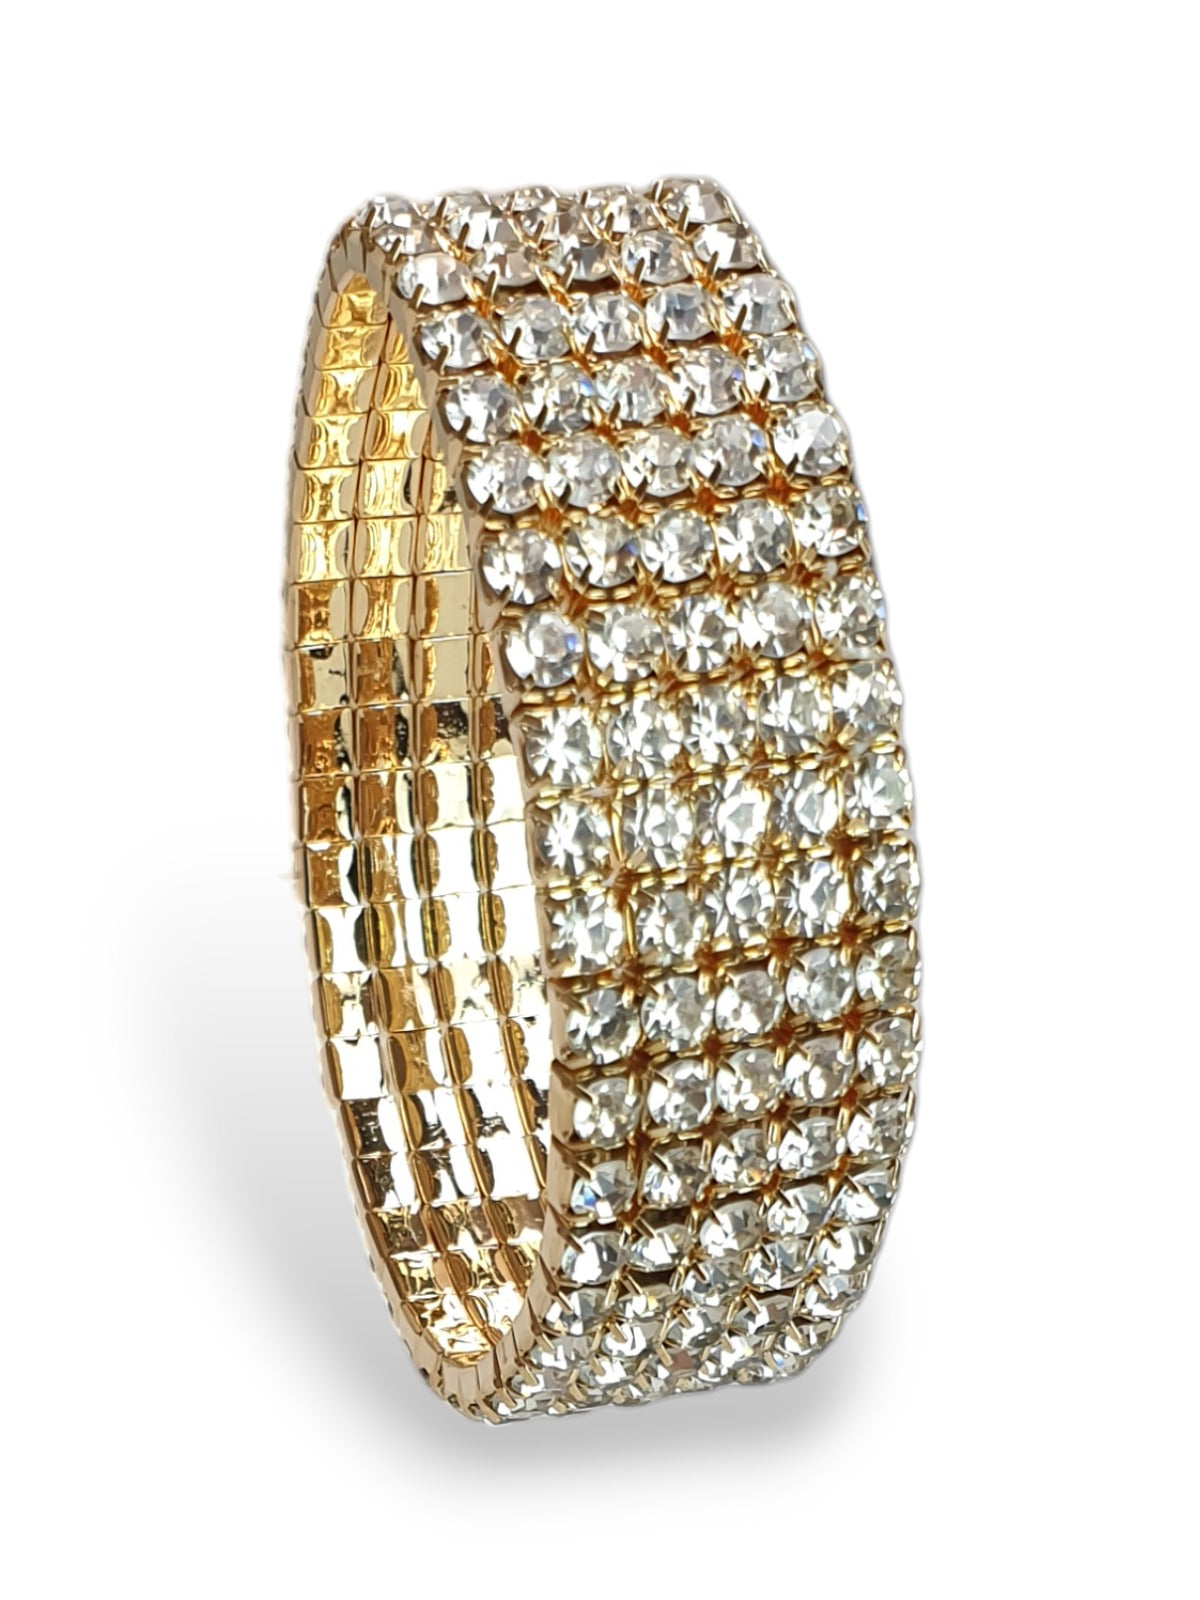 3/5 Row Stretchy Diamante Bracelet Gold